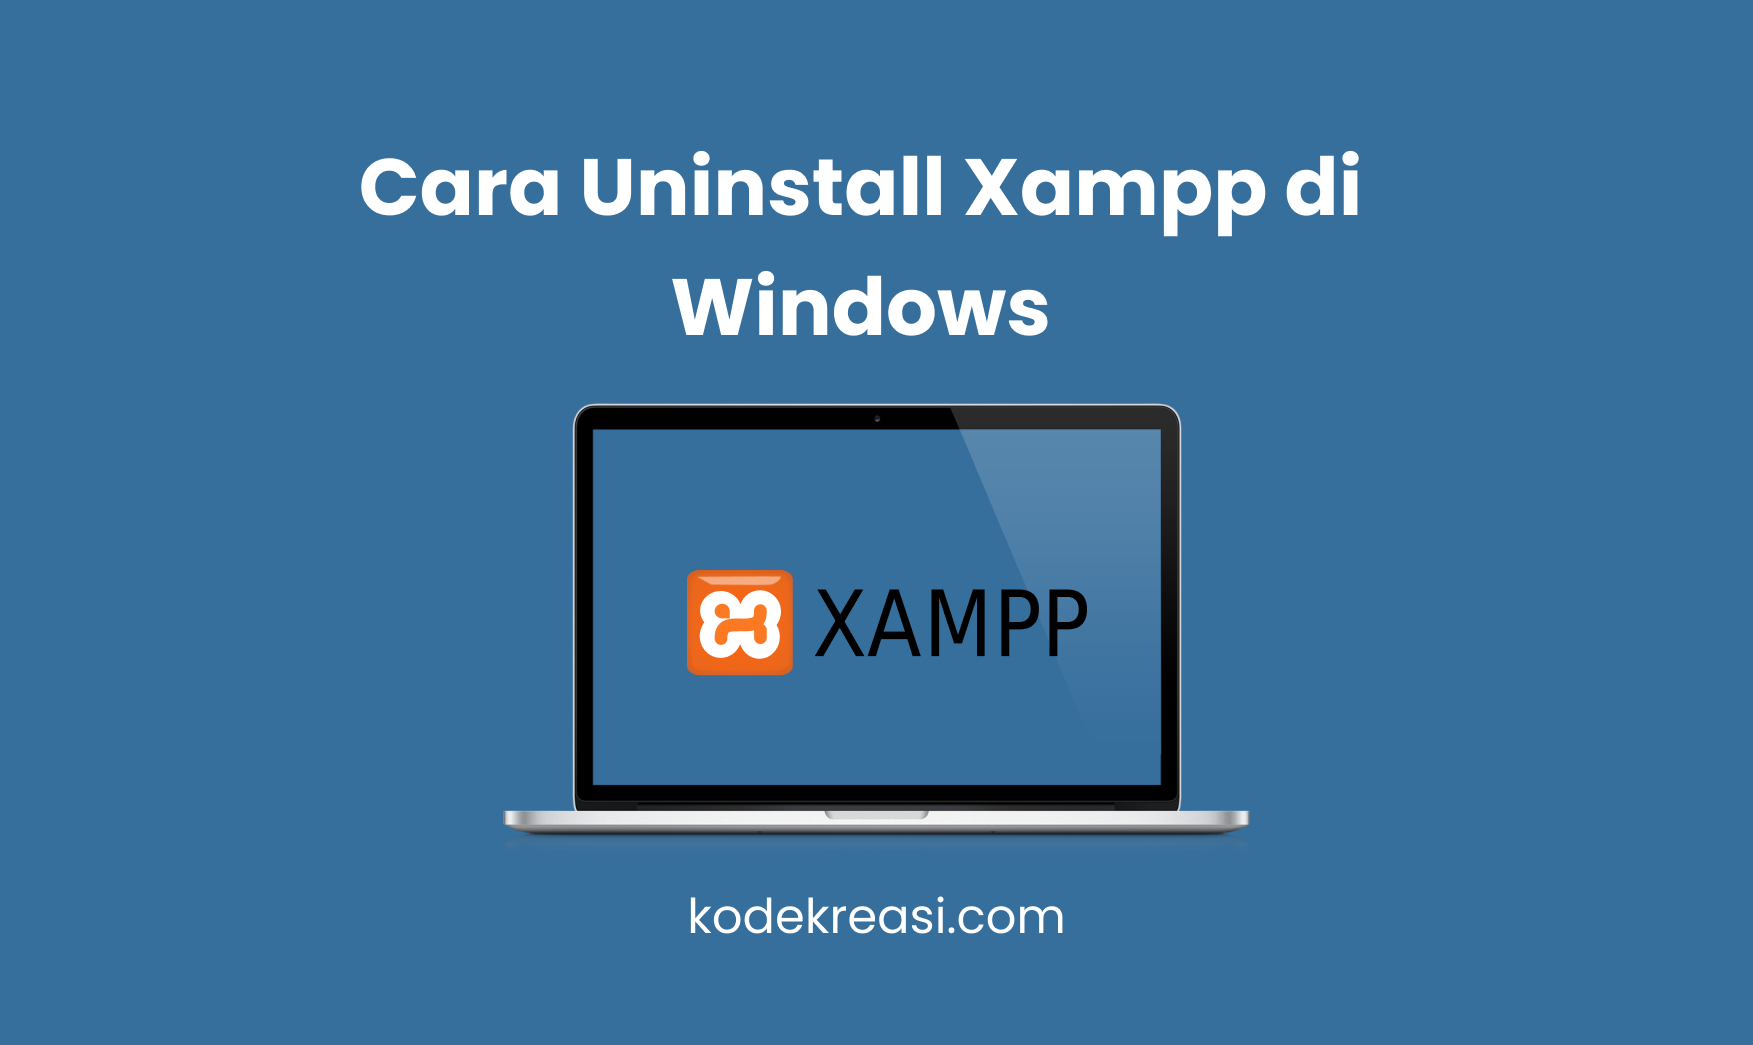 Cara Uninstall Xampp di Windows